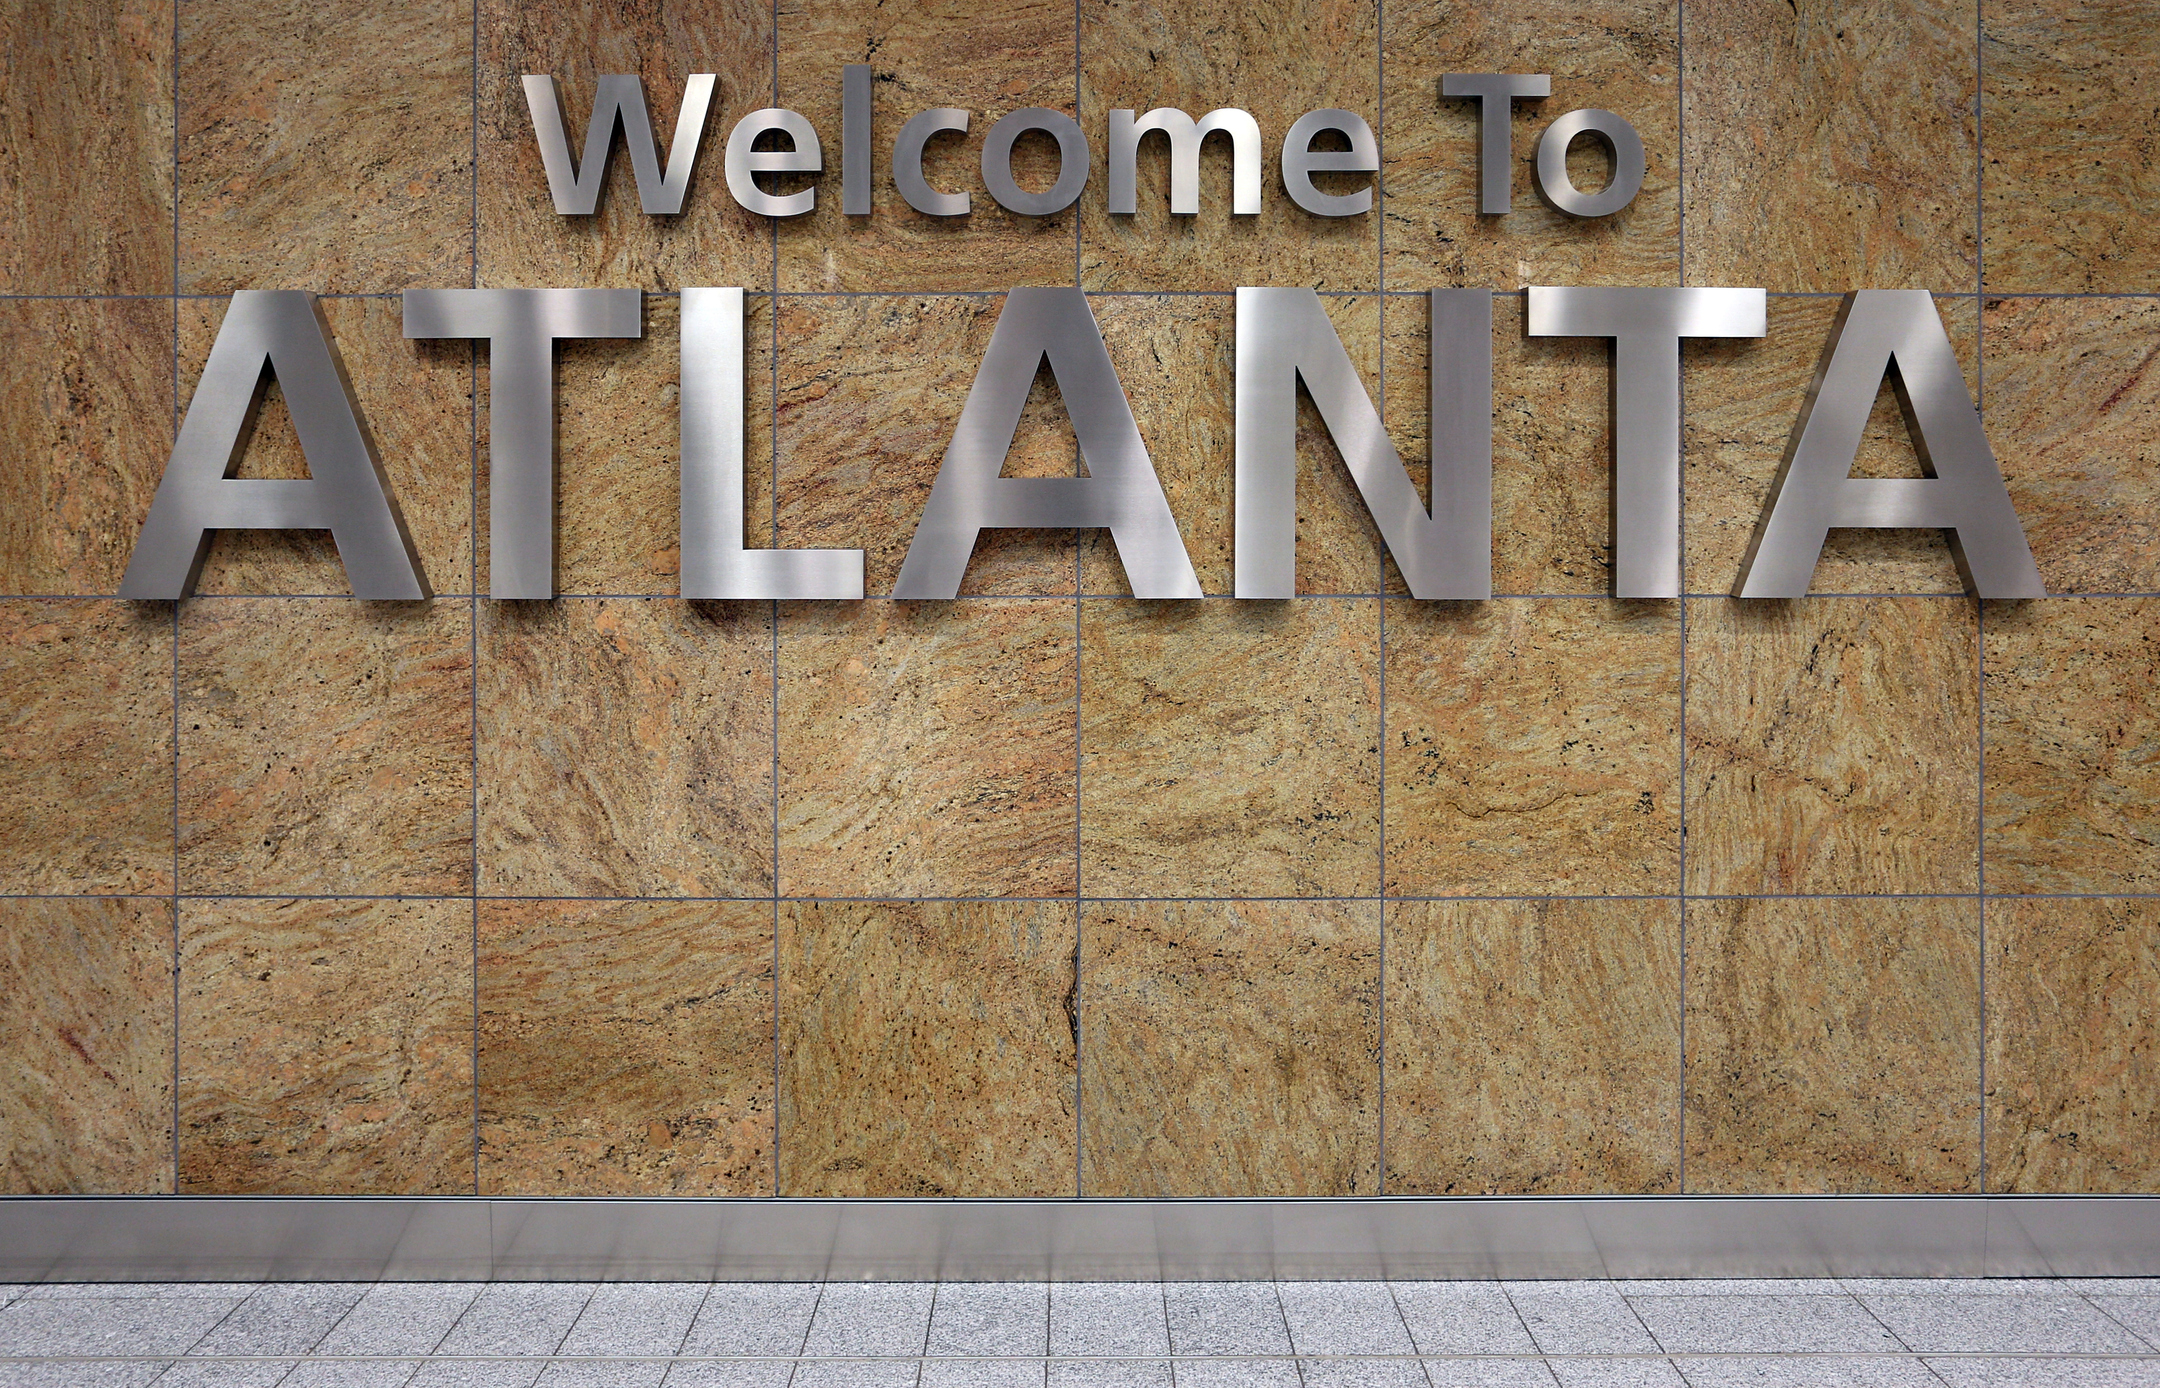 atlanta airport sign